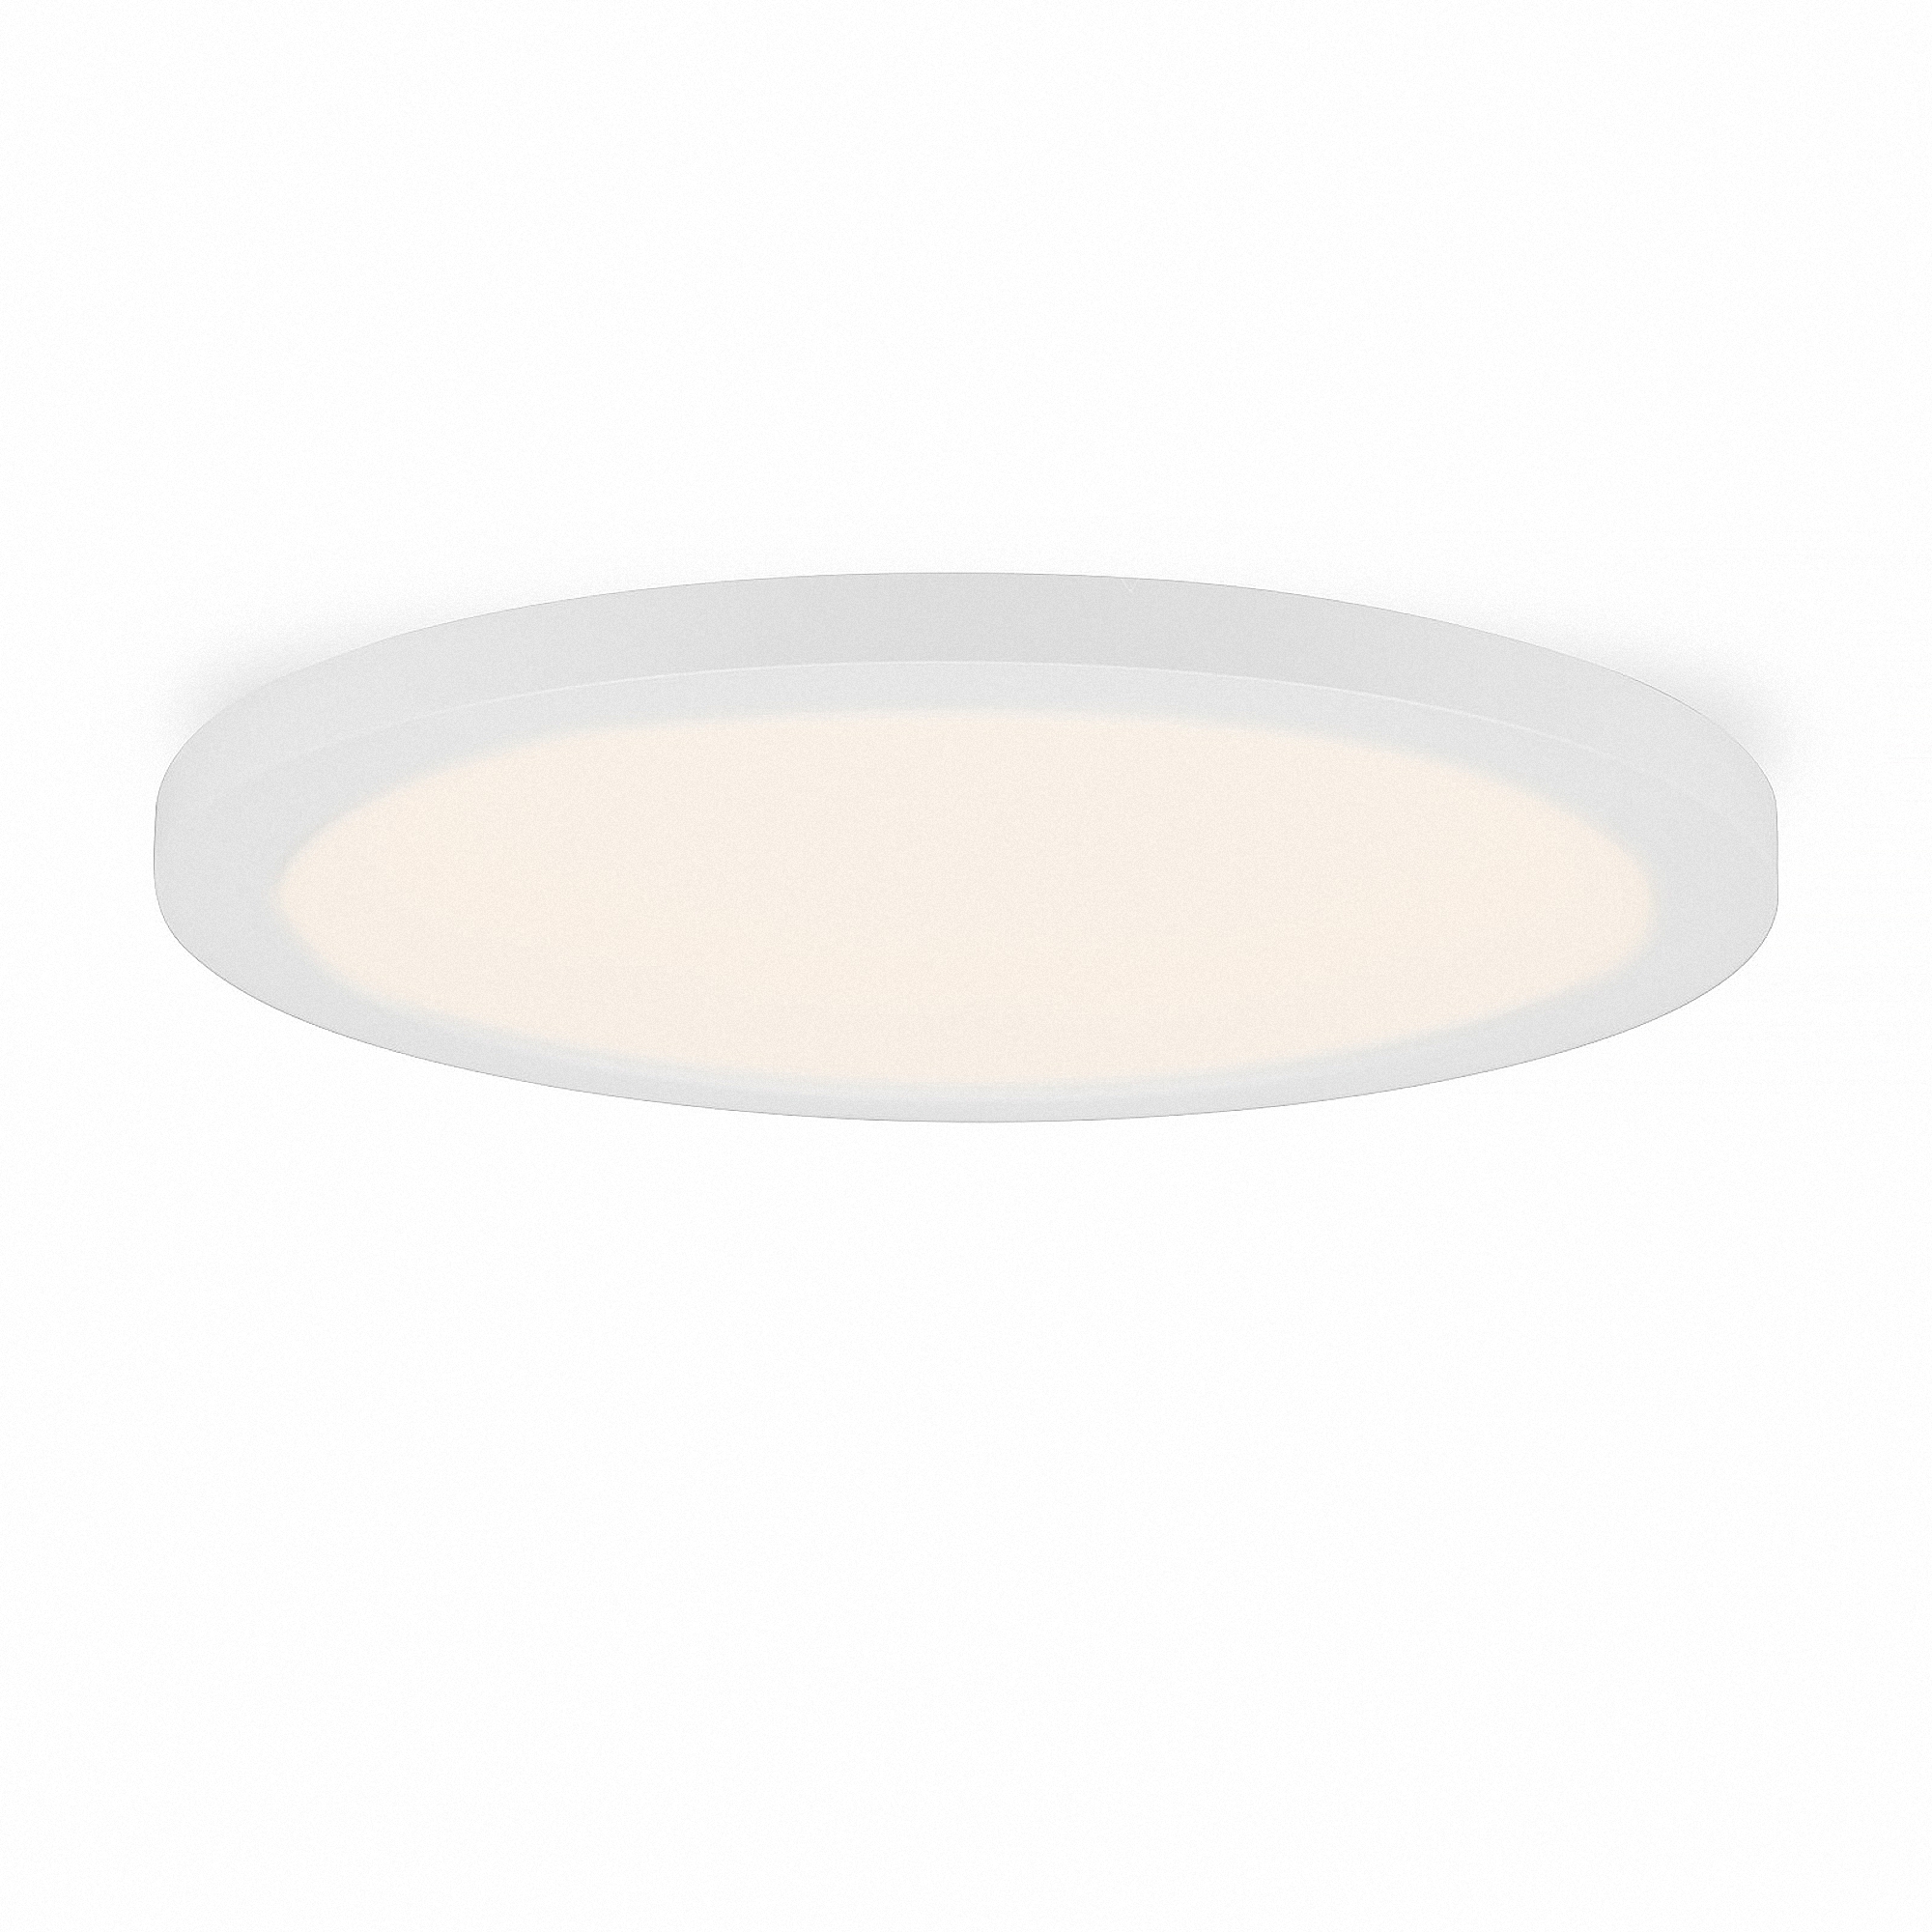 LED installation / design Panel Aura round warm white 12W (W) Ø 55 to 125mm